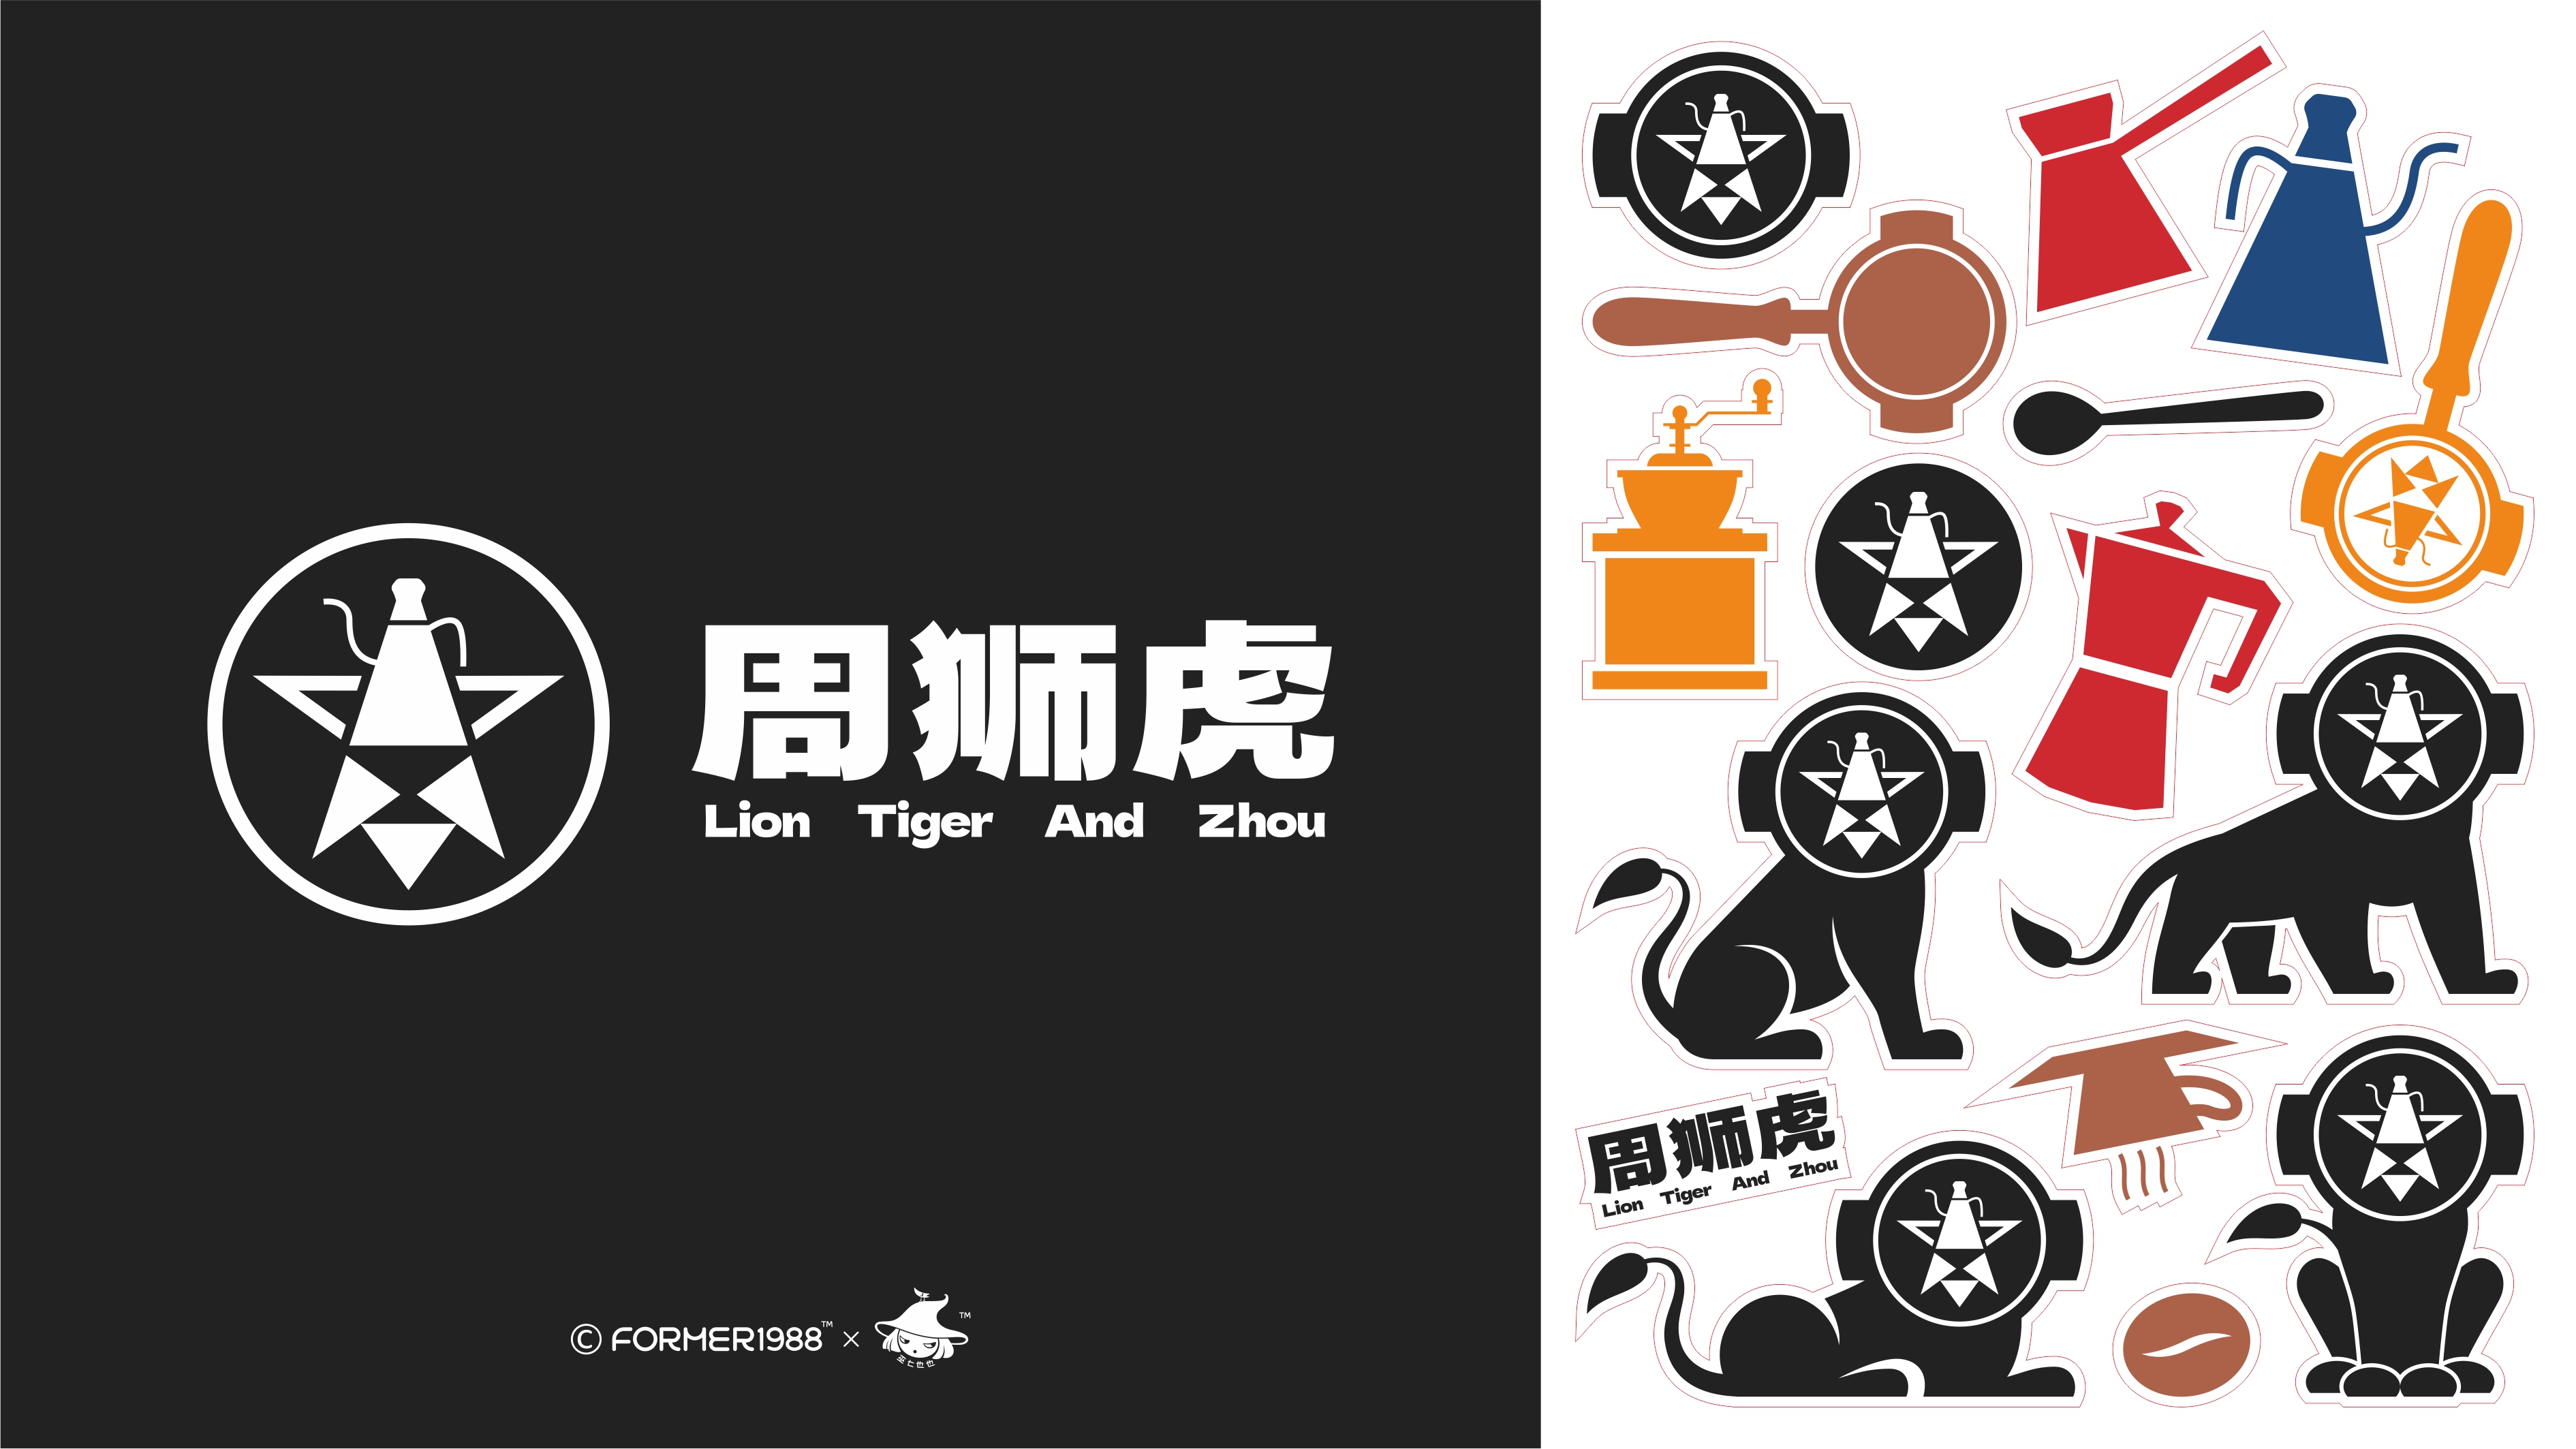 周狮虎咖啡LOGO和包装设计 | 原创 插画